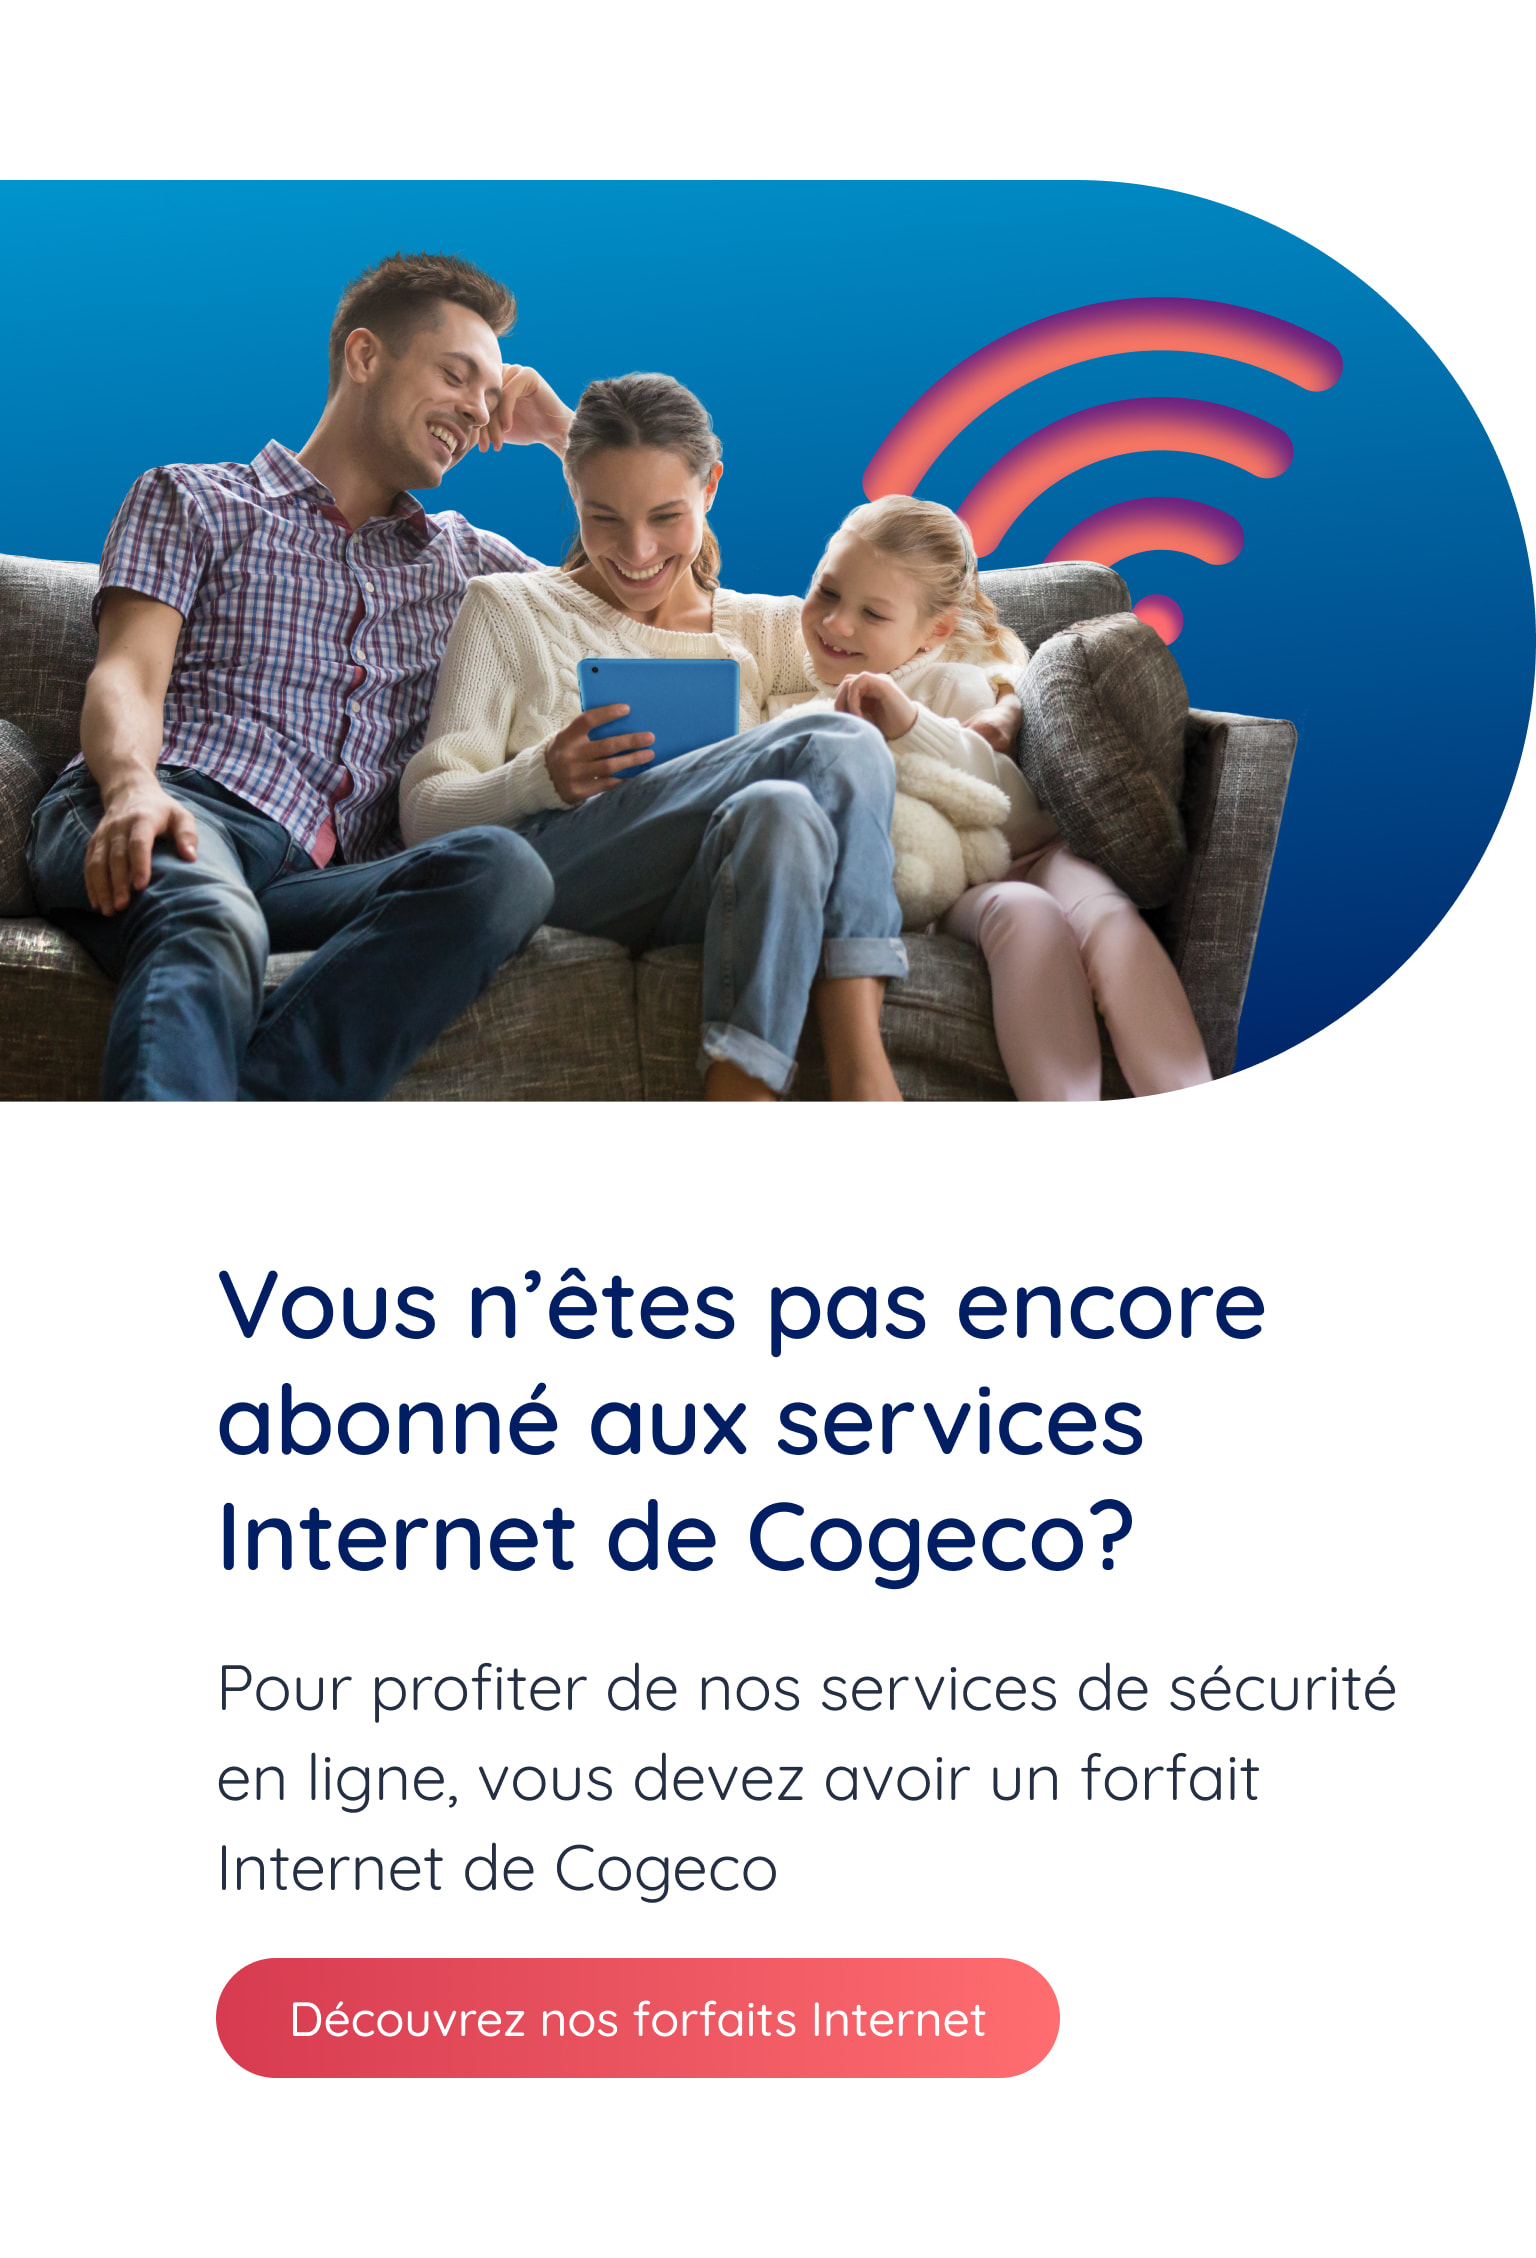 Vous n'êtes pas encore abonné aux services Internet de Cogeco? Pour profiter de nos services de sécurité en ligne, vous devez avoir un forfait Internet de Cogeco. Découvrez nos forfaits Internet